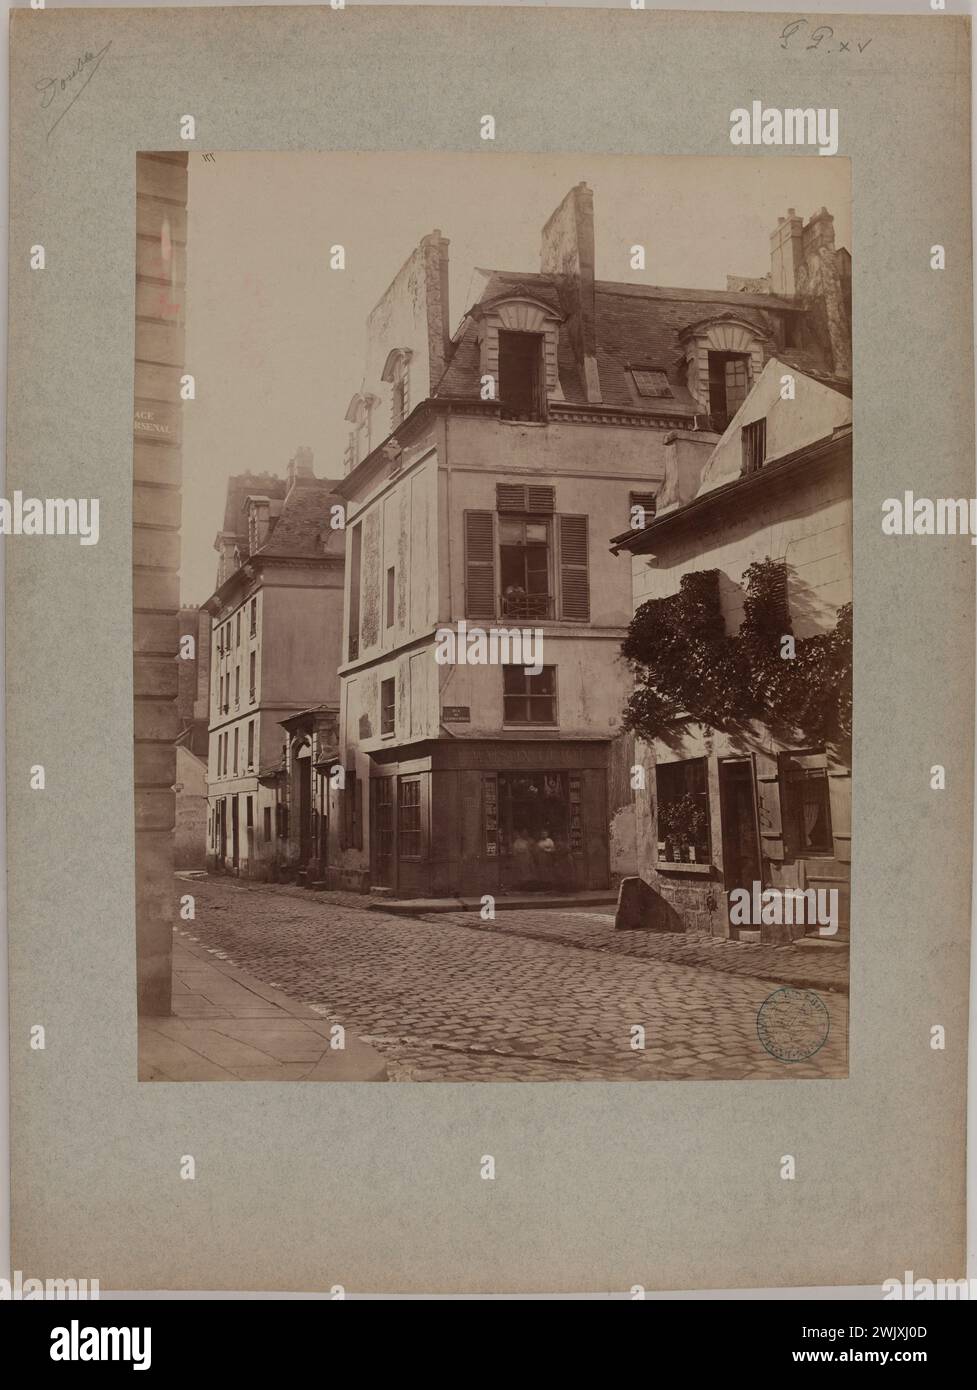 Emonts or Emonds, Pierre. 'Hôtel de Lesdiguières, rue de la Cerisaie, 4th arrondissement, Paris'. Albumin paper draw. in 1870-1870. Paris, Carnavalet museum. 123820-29 Stock Photo